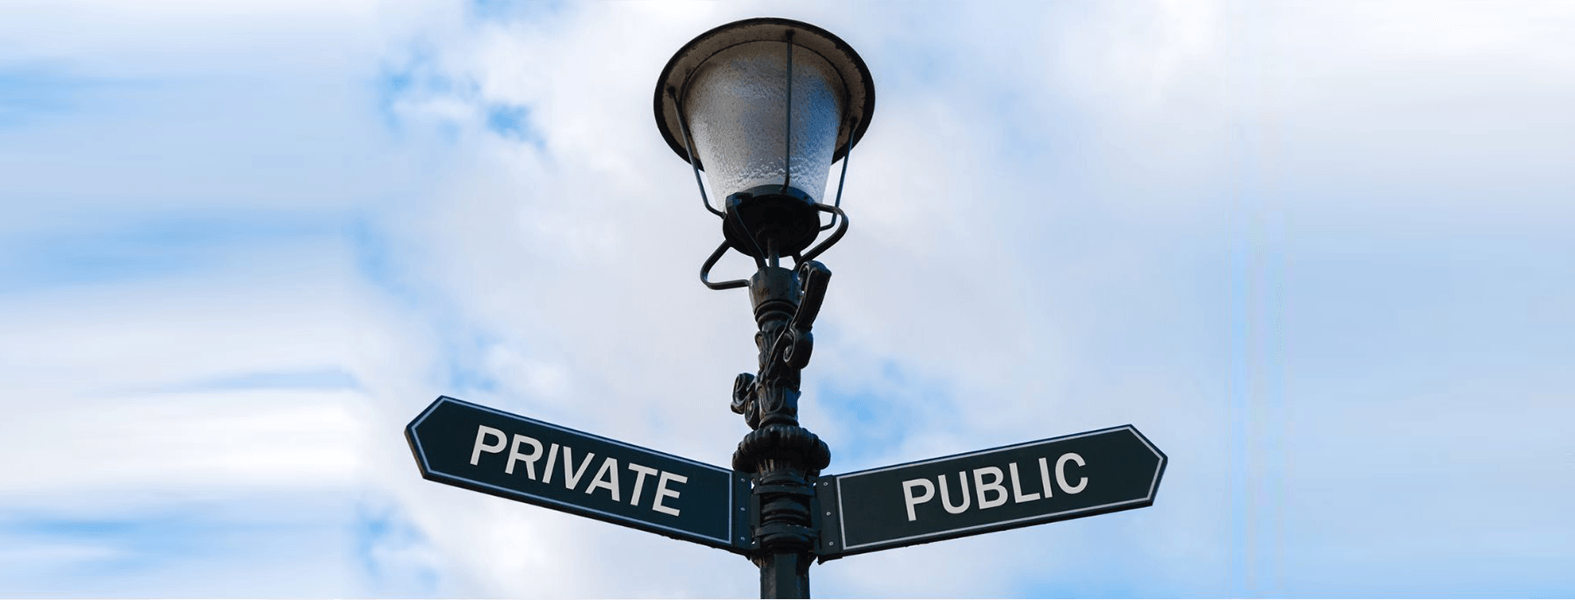 הזכות לפרטיות